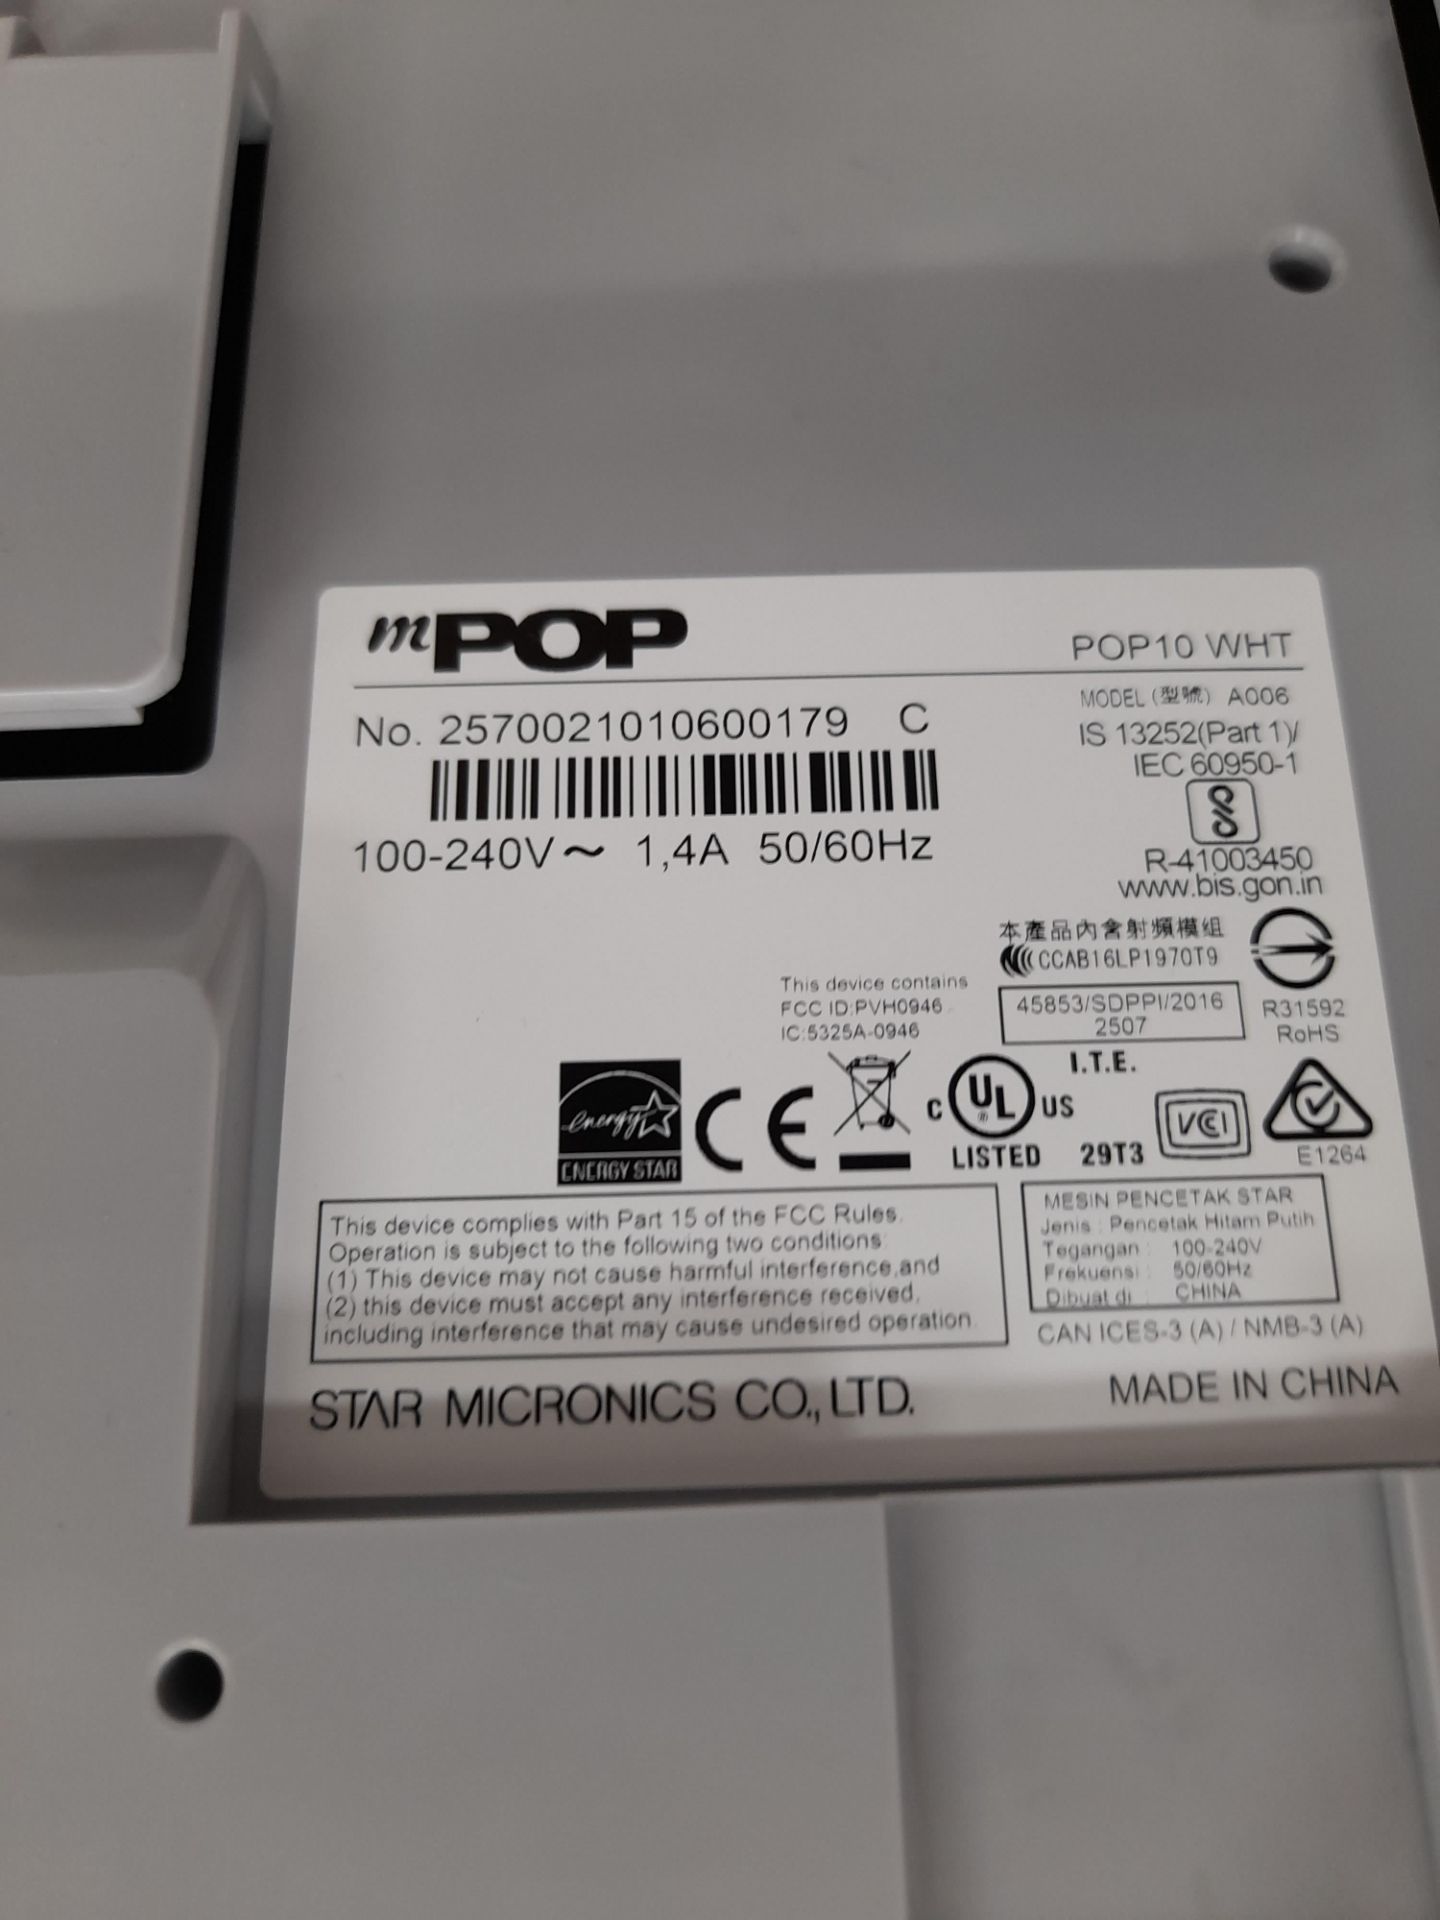 Star MPop EPOS Receipt Printer & Cash Drawer - Image 2 of 2